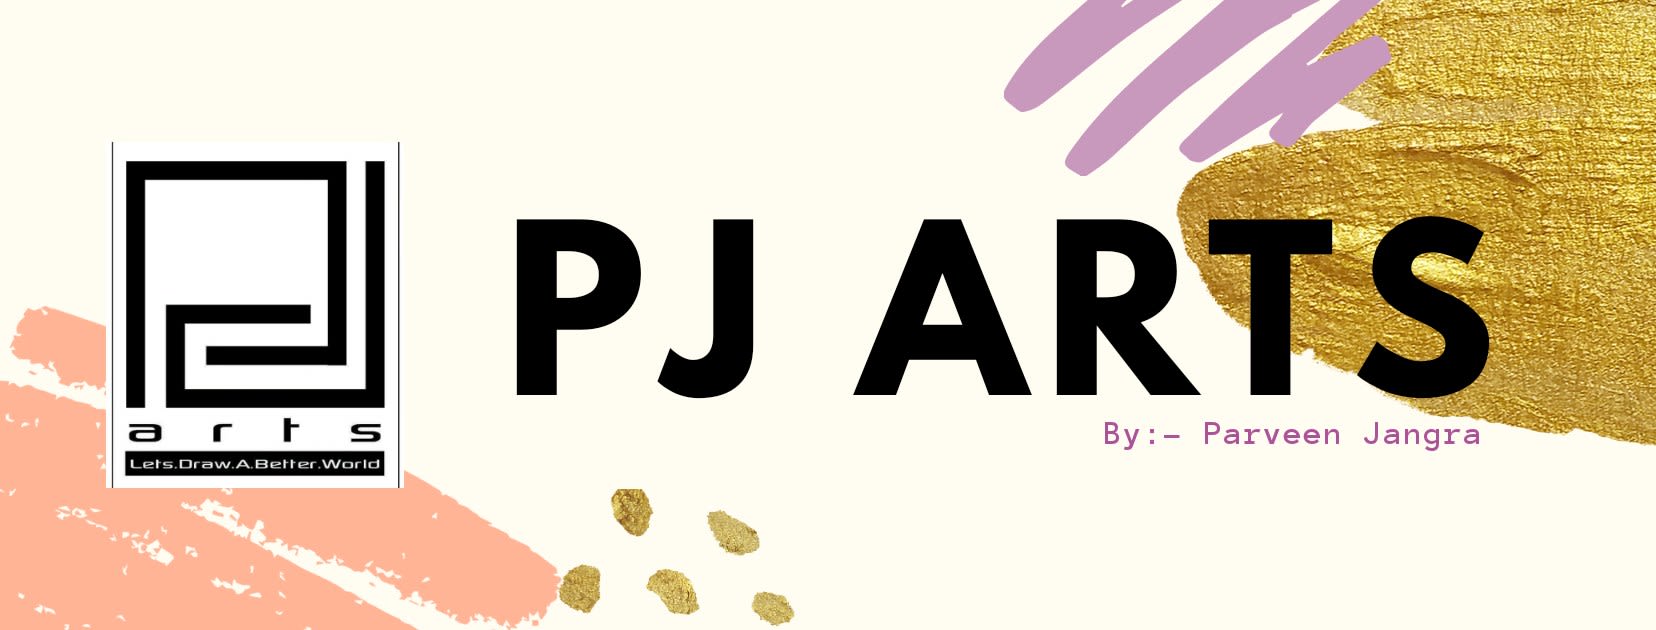 PJ Art's